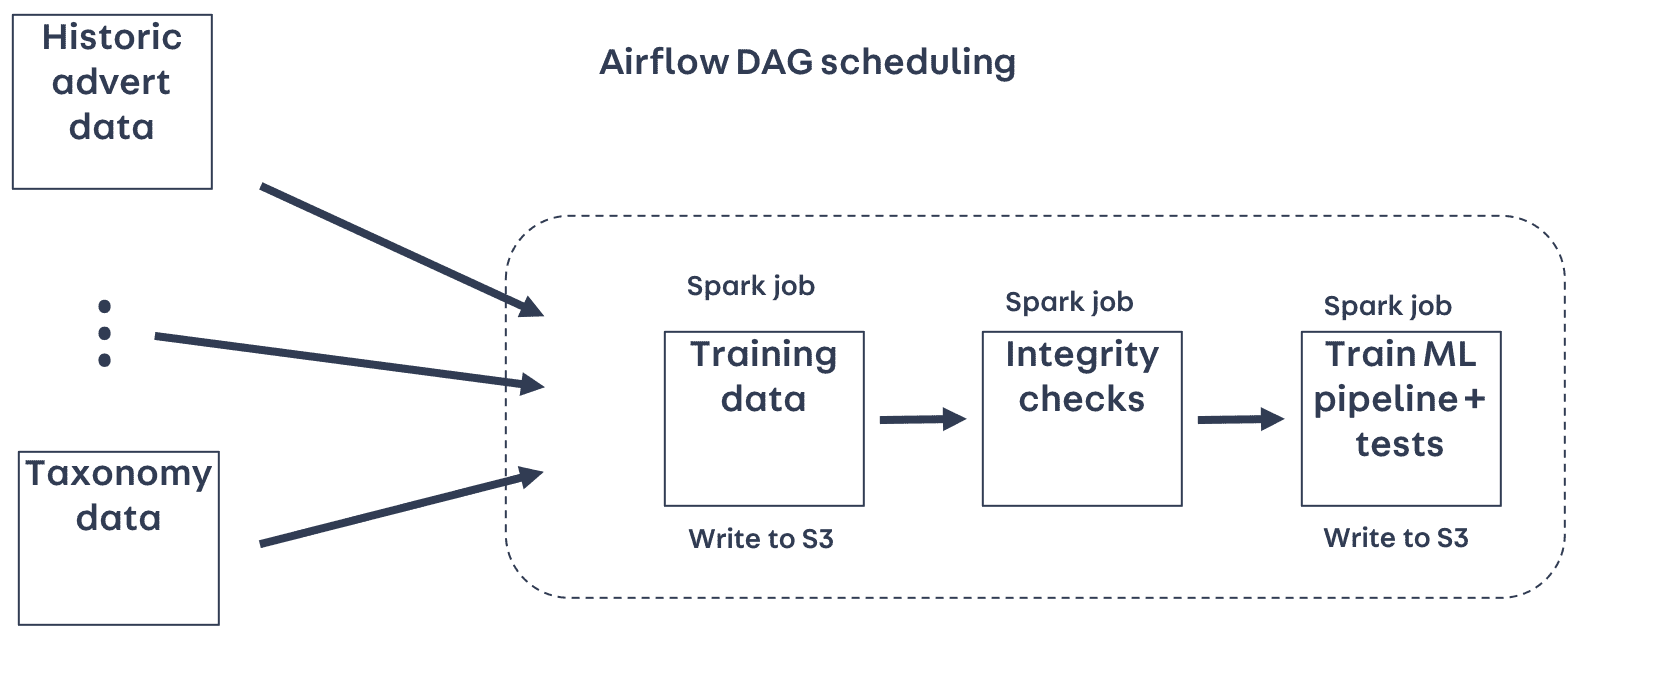 Airflow DAG scheduling